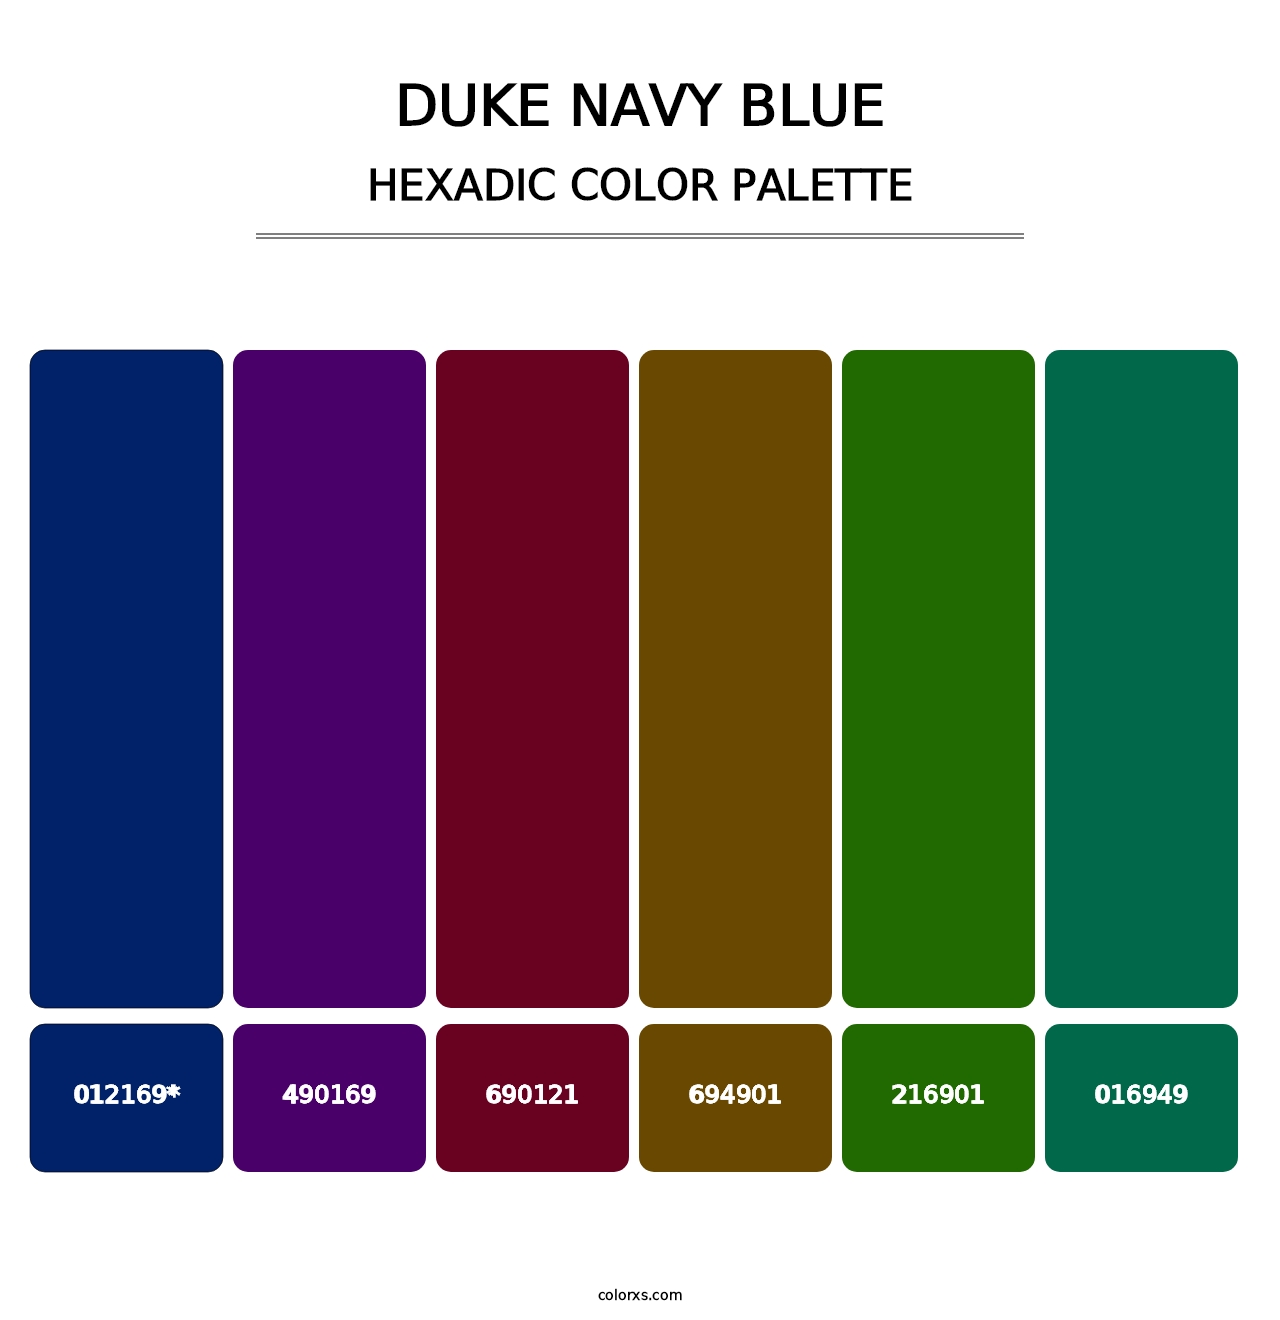 Duke Navy Blue - Hexadic Color Palette